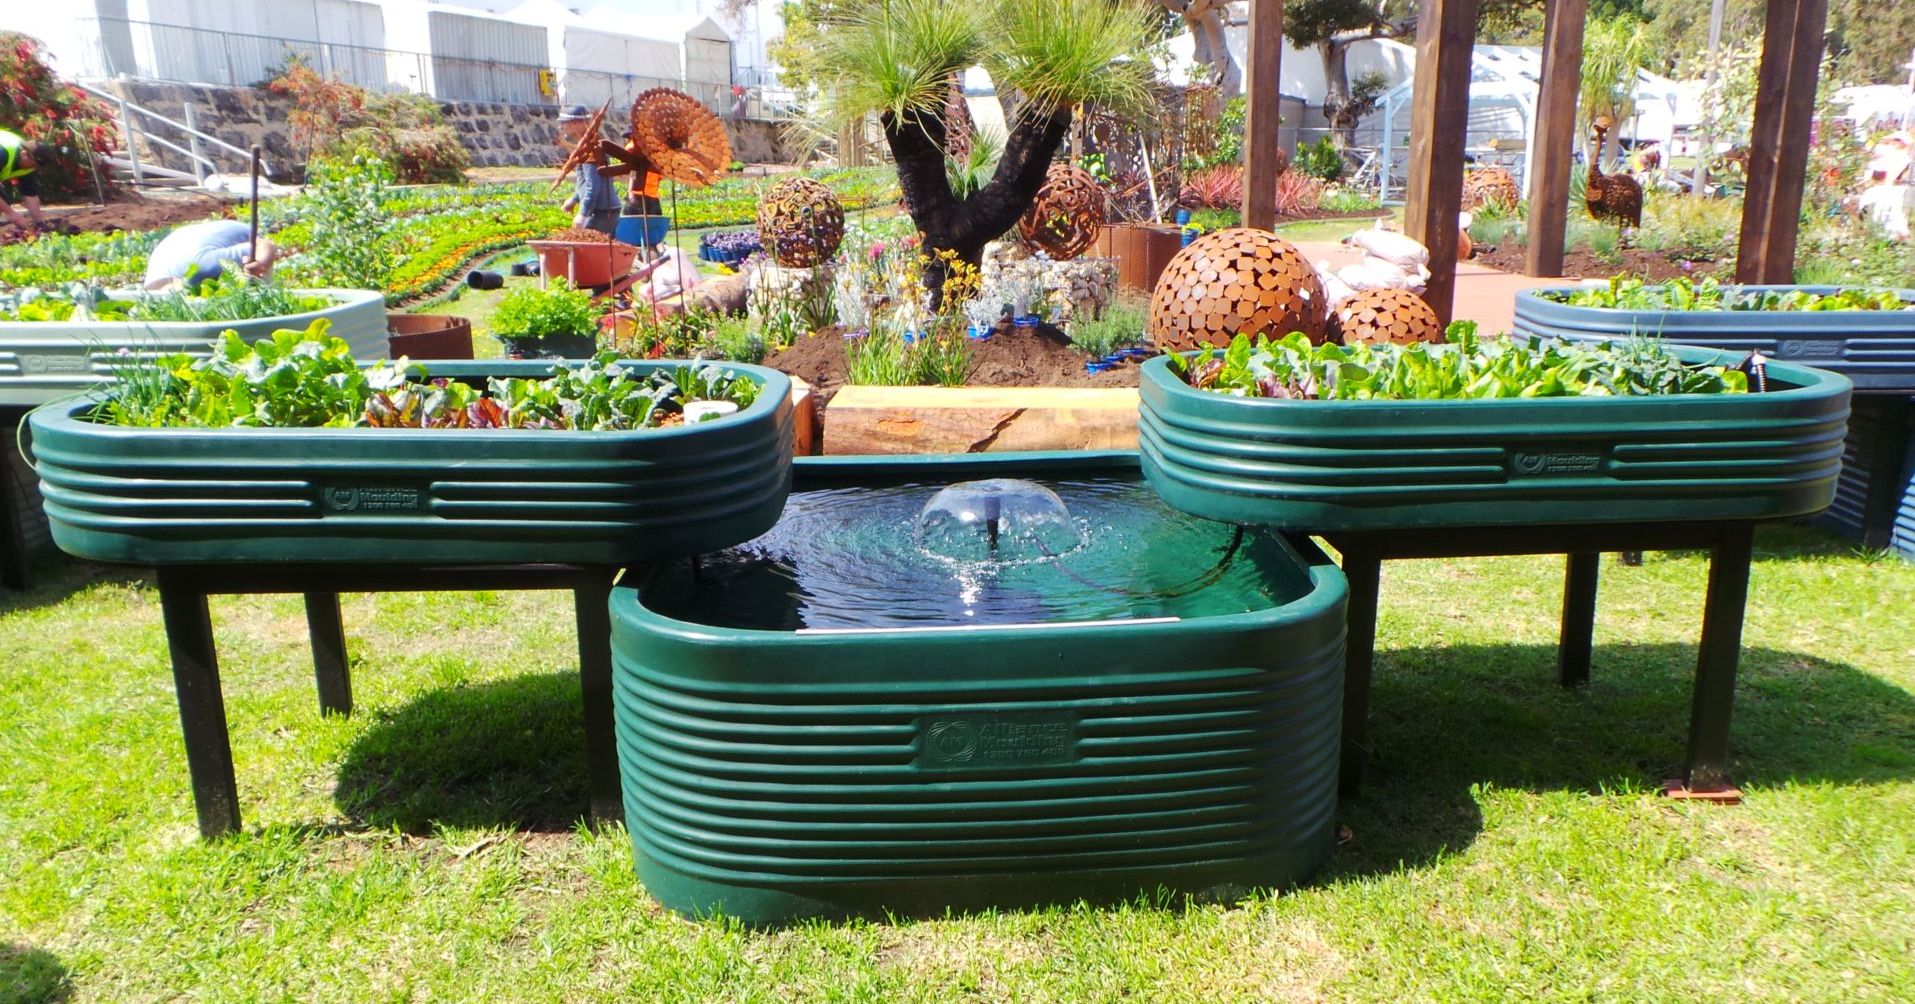 Aquaponics gardening system